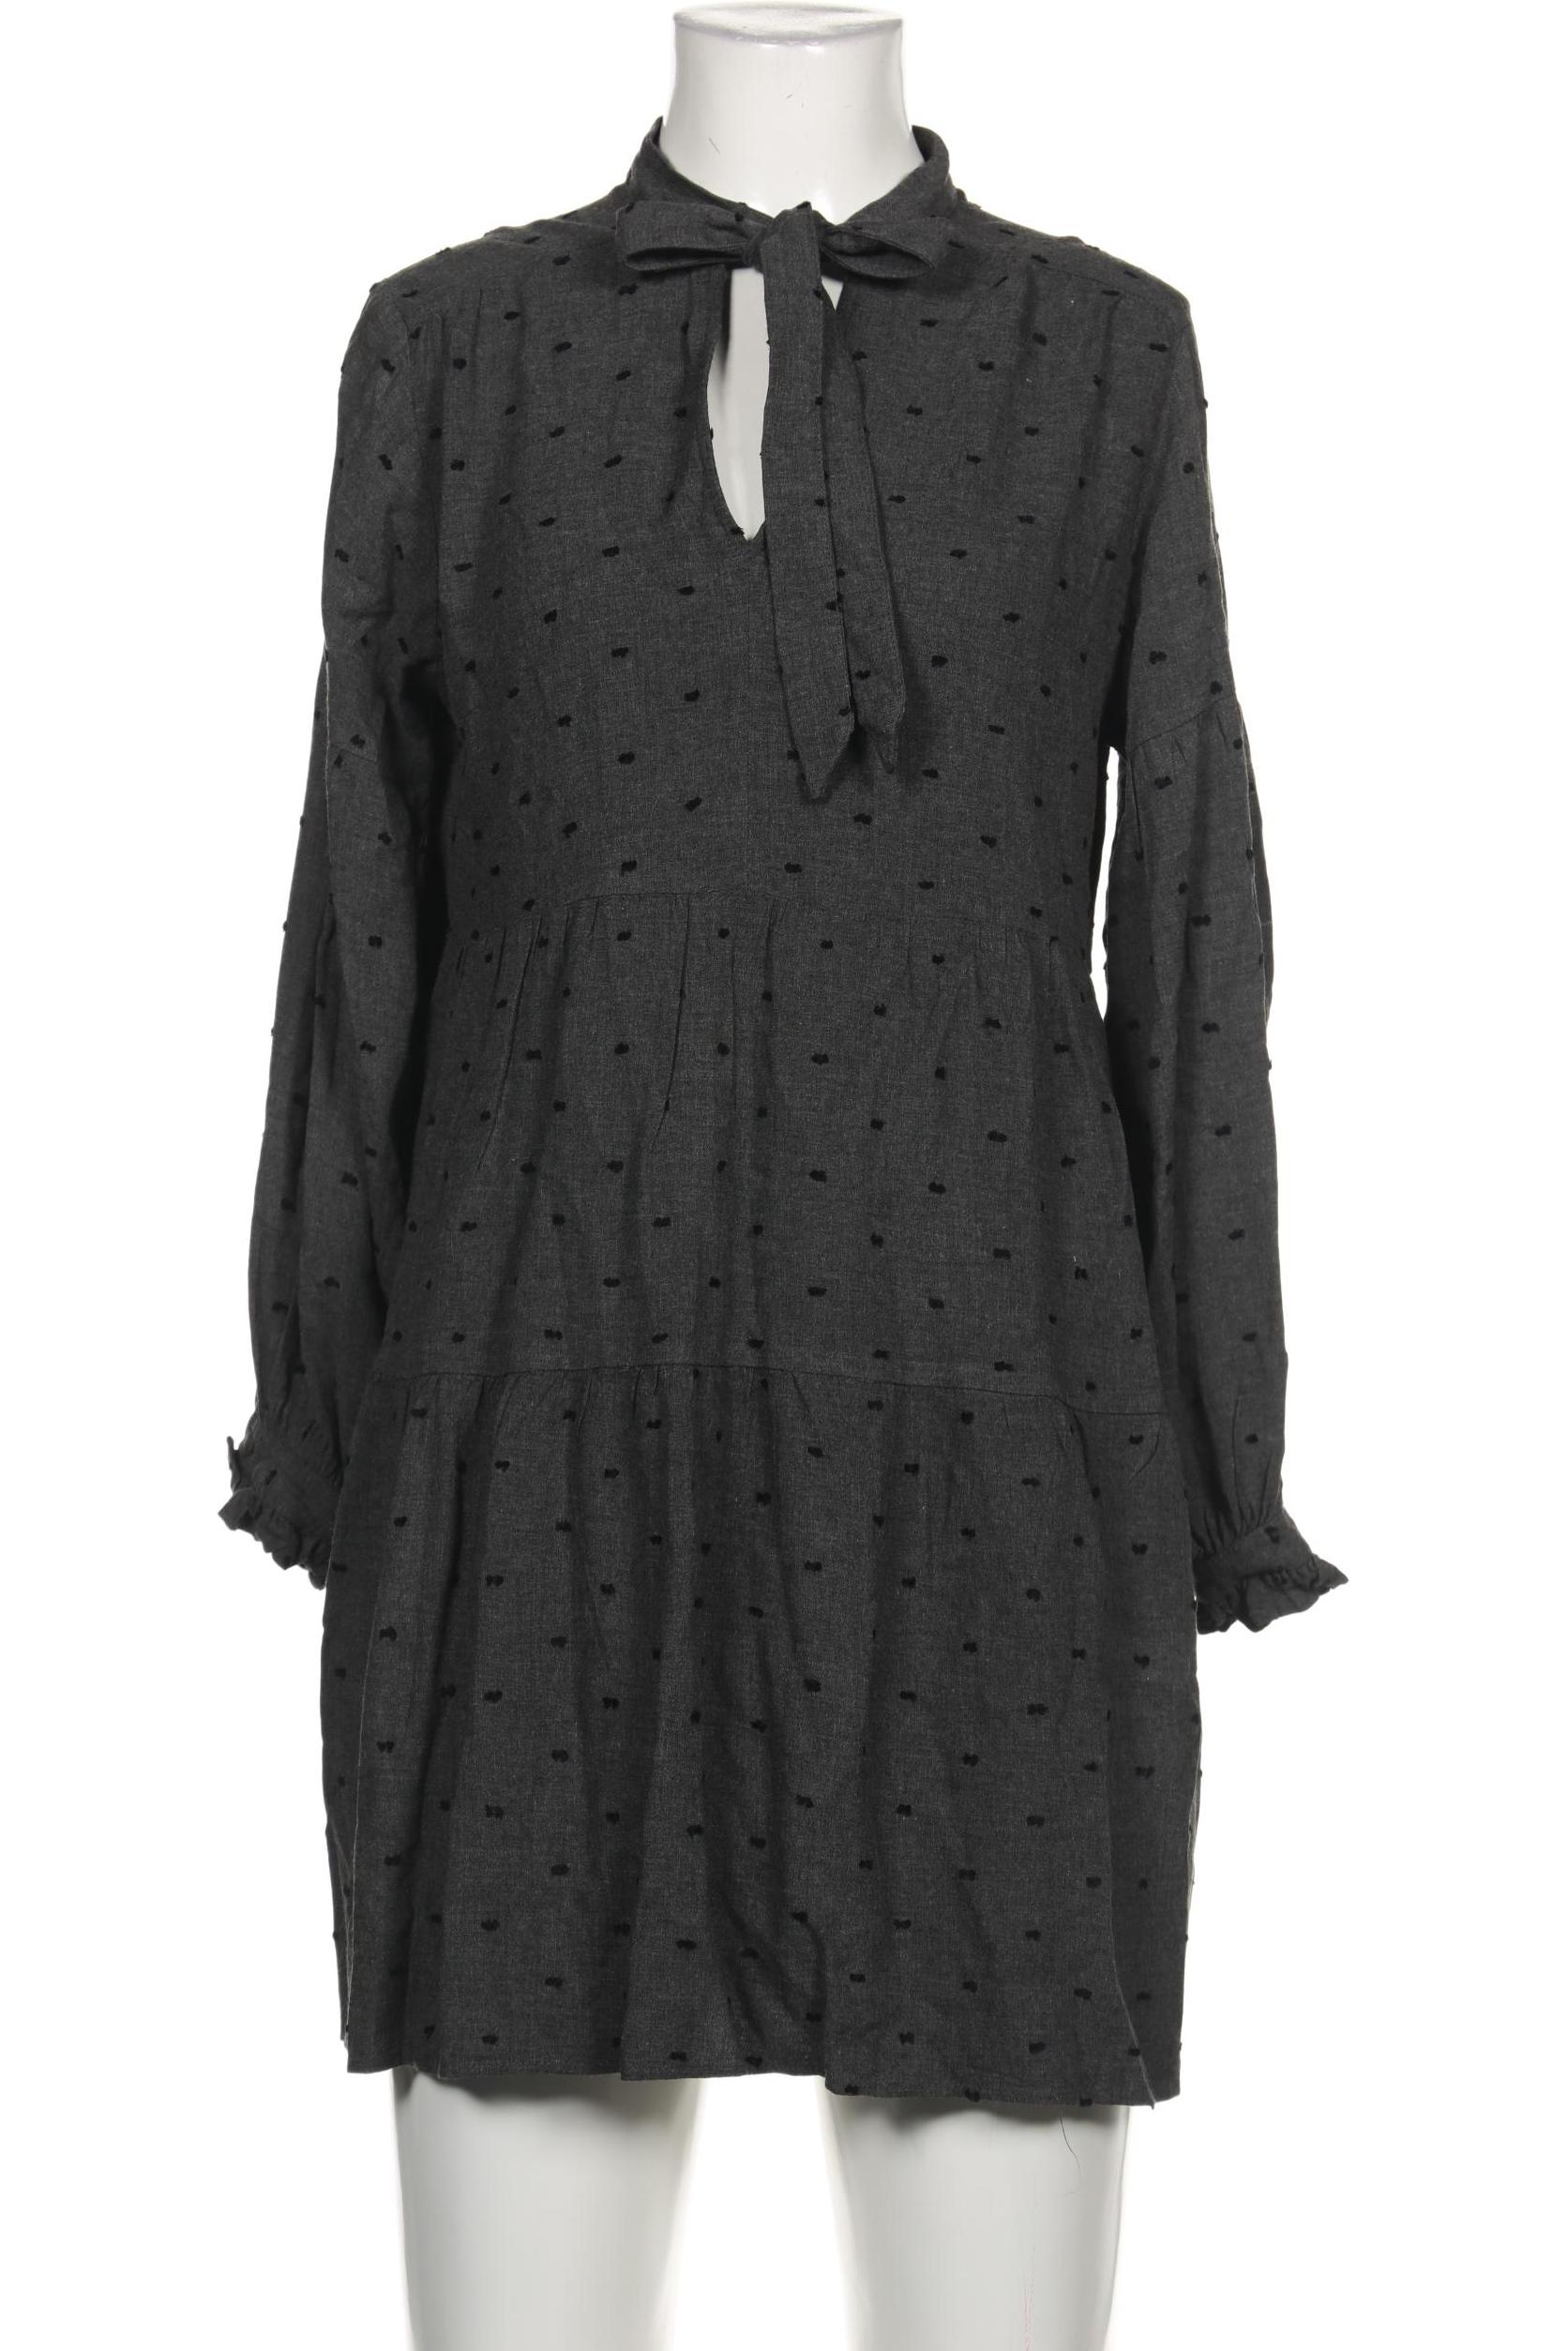 Zara Damen Kleid, grau, Gr. 34 von ZARA